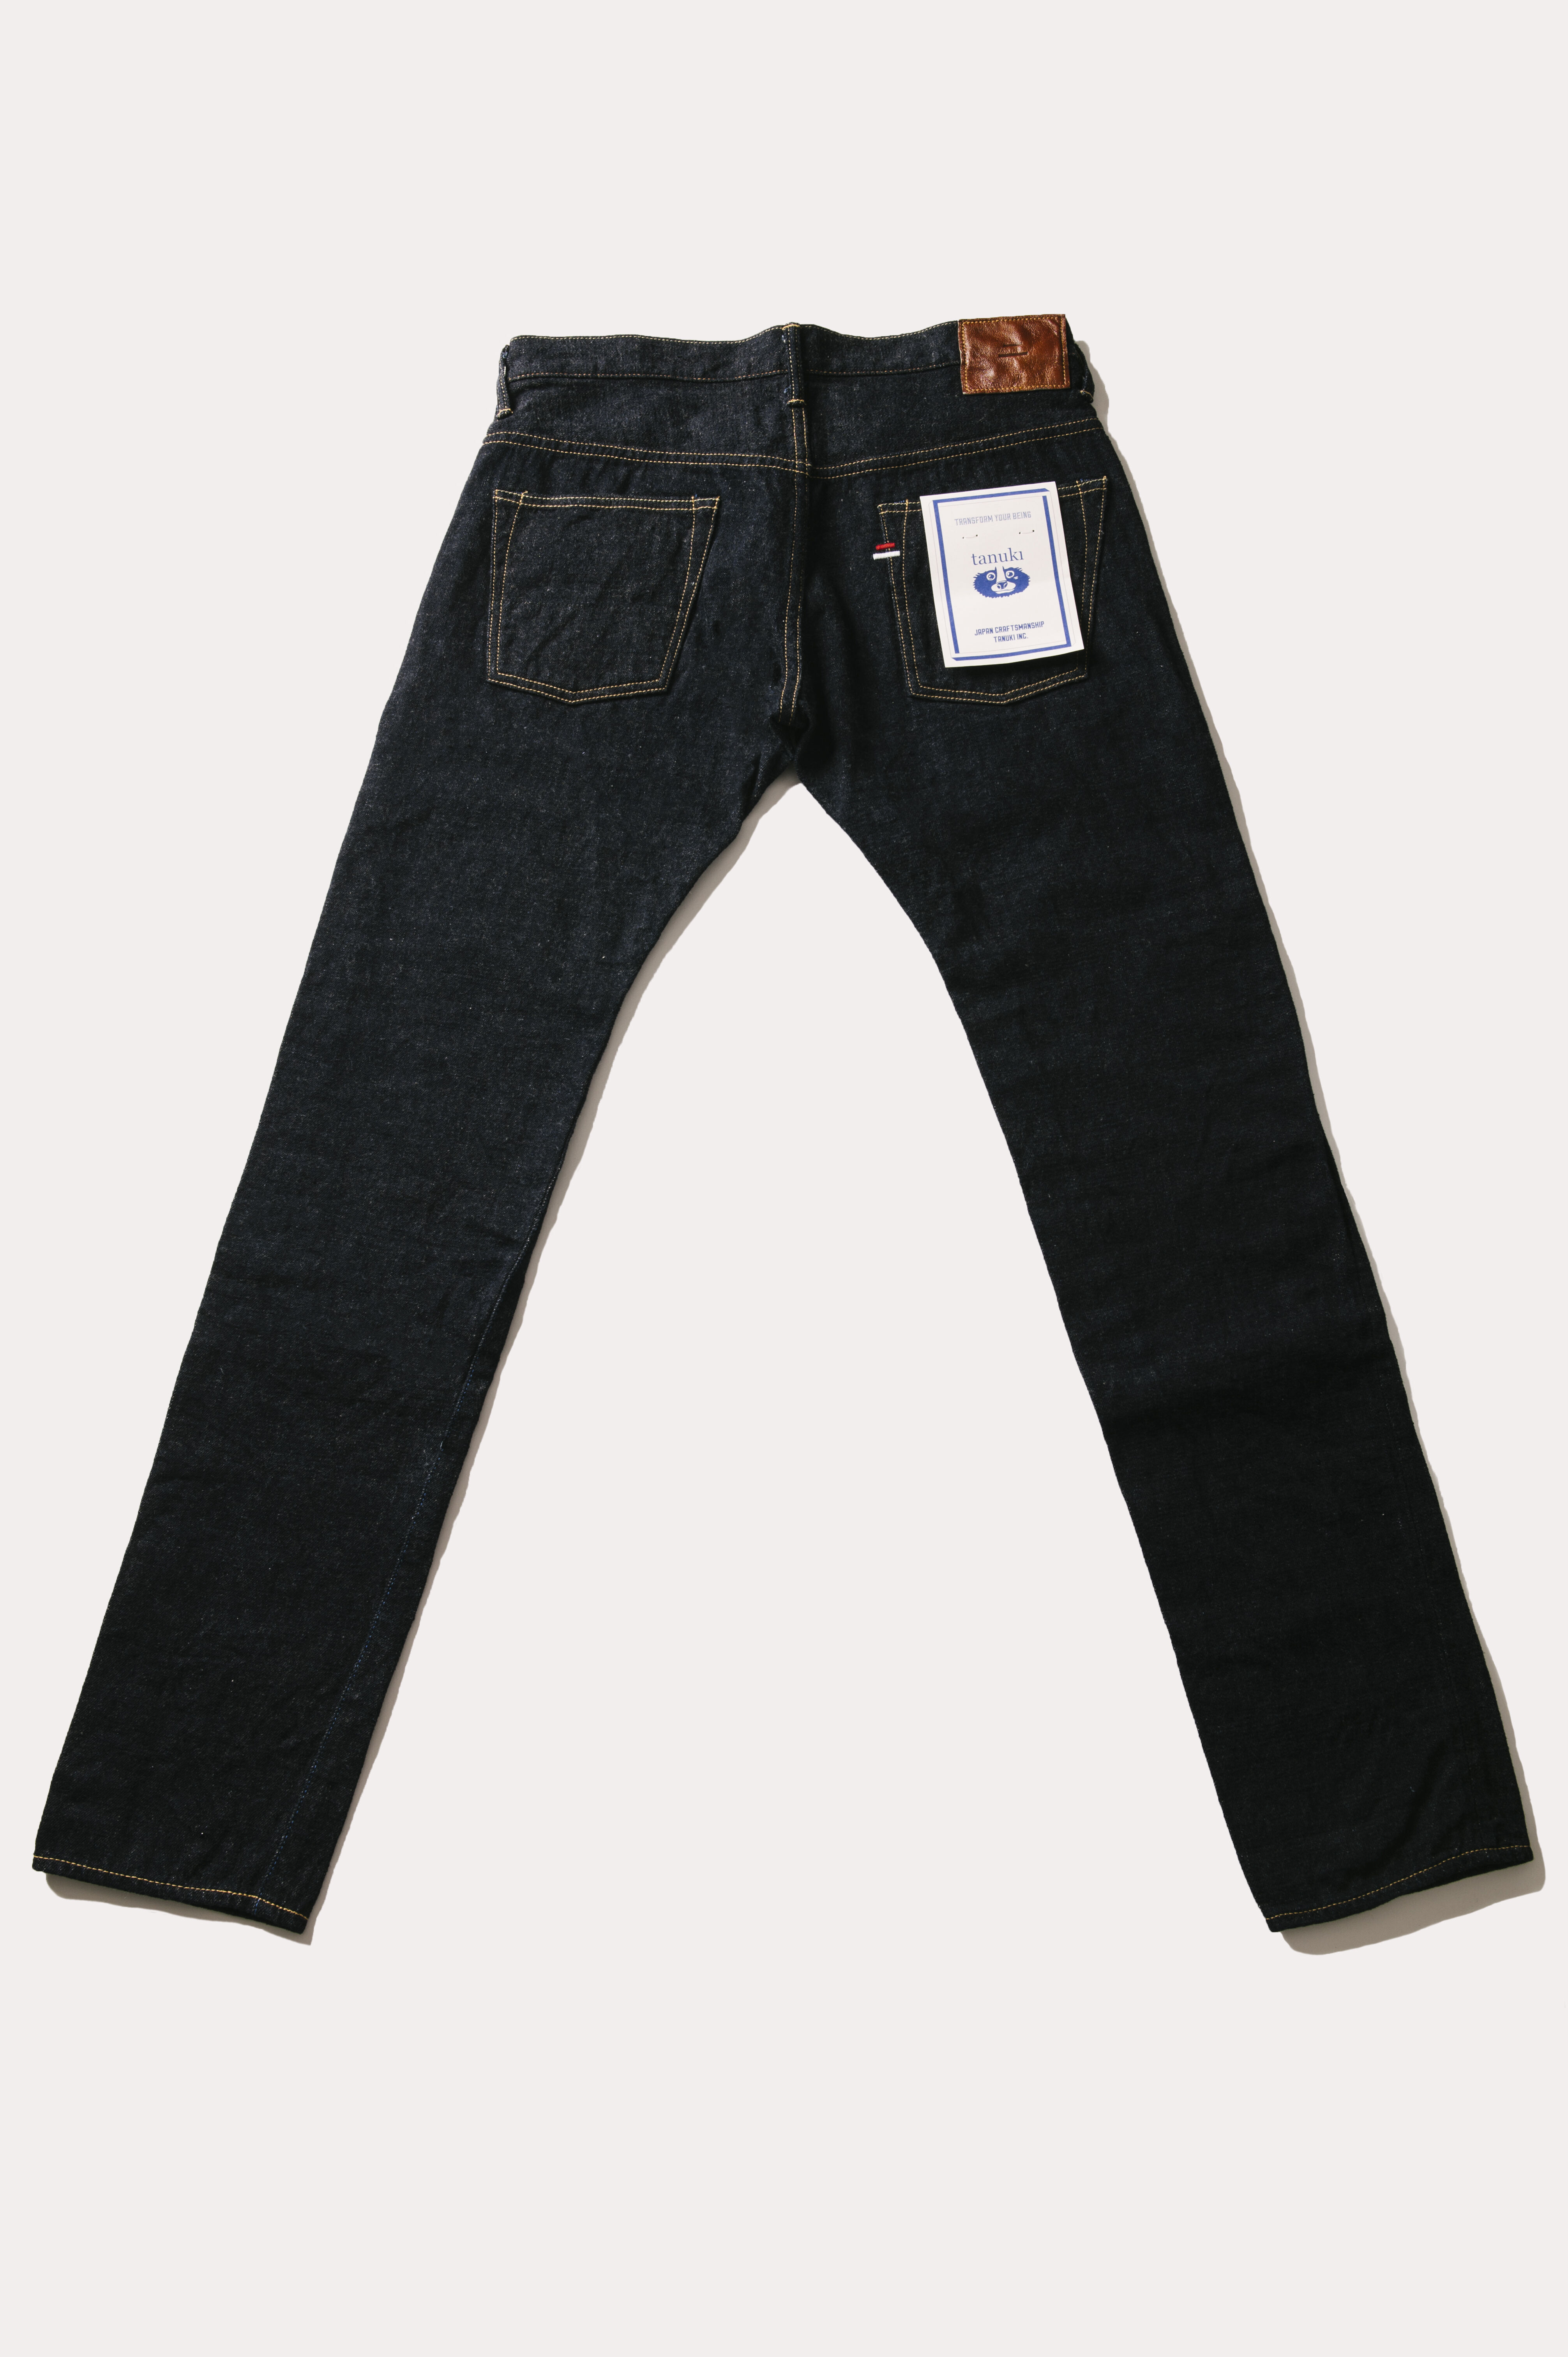 Vintage 90s Distress Levis 501 Jeans 36x26, Levis High Waist, Vintage Levis  Jeans, High Waist Jeans, Vintage Levis 501, Vintage Levis Black - Etsy